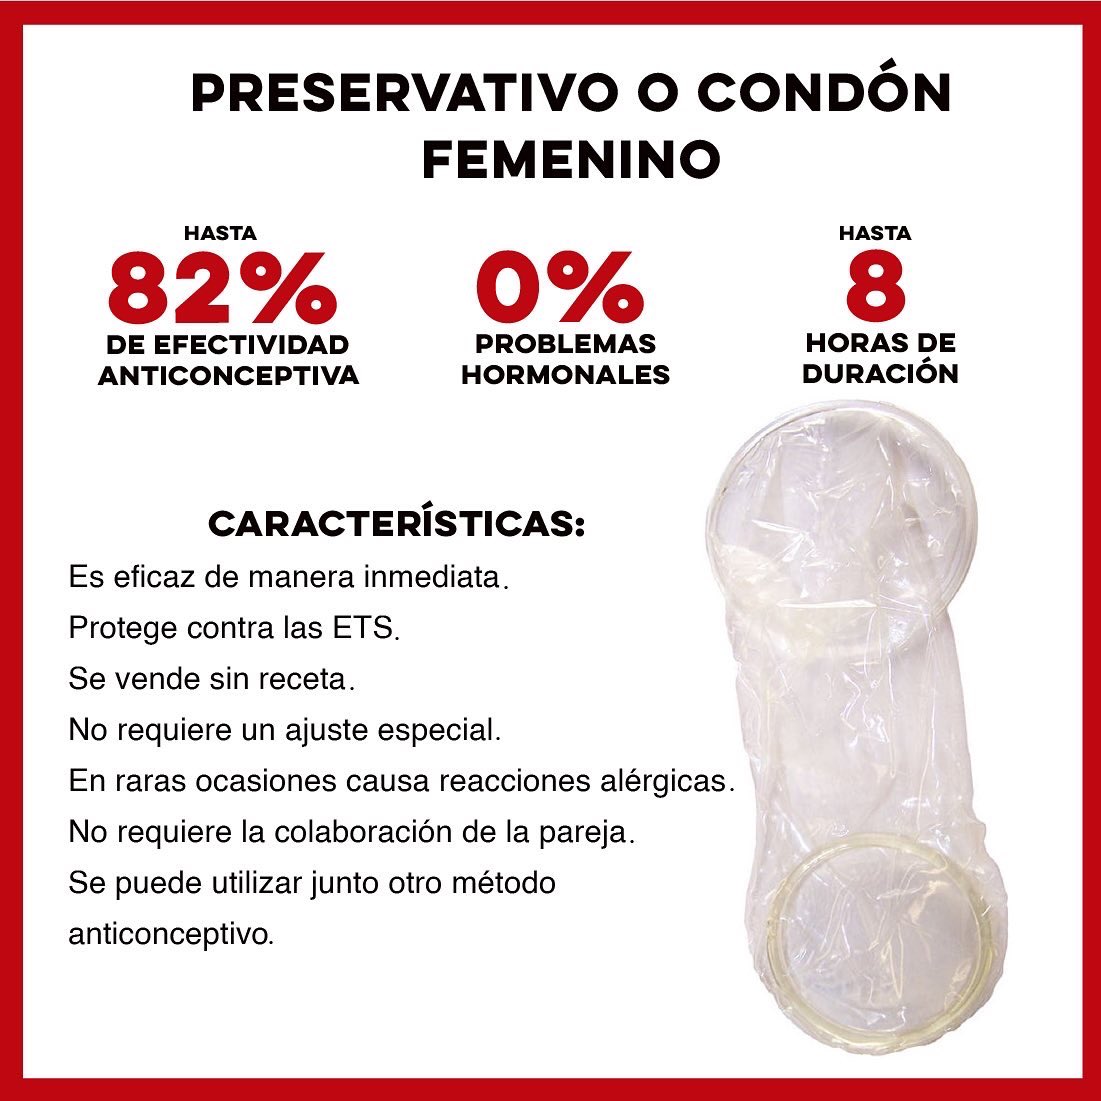 Salud Sonora on Twitter: "🟠 Hoy en el Día Internacional Condón, te invitamos a revisar la siguiente información sobre estadísitica de efectividad, modo uso y características de los preservativos femeninos